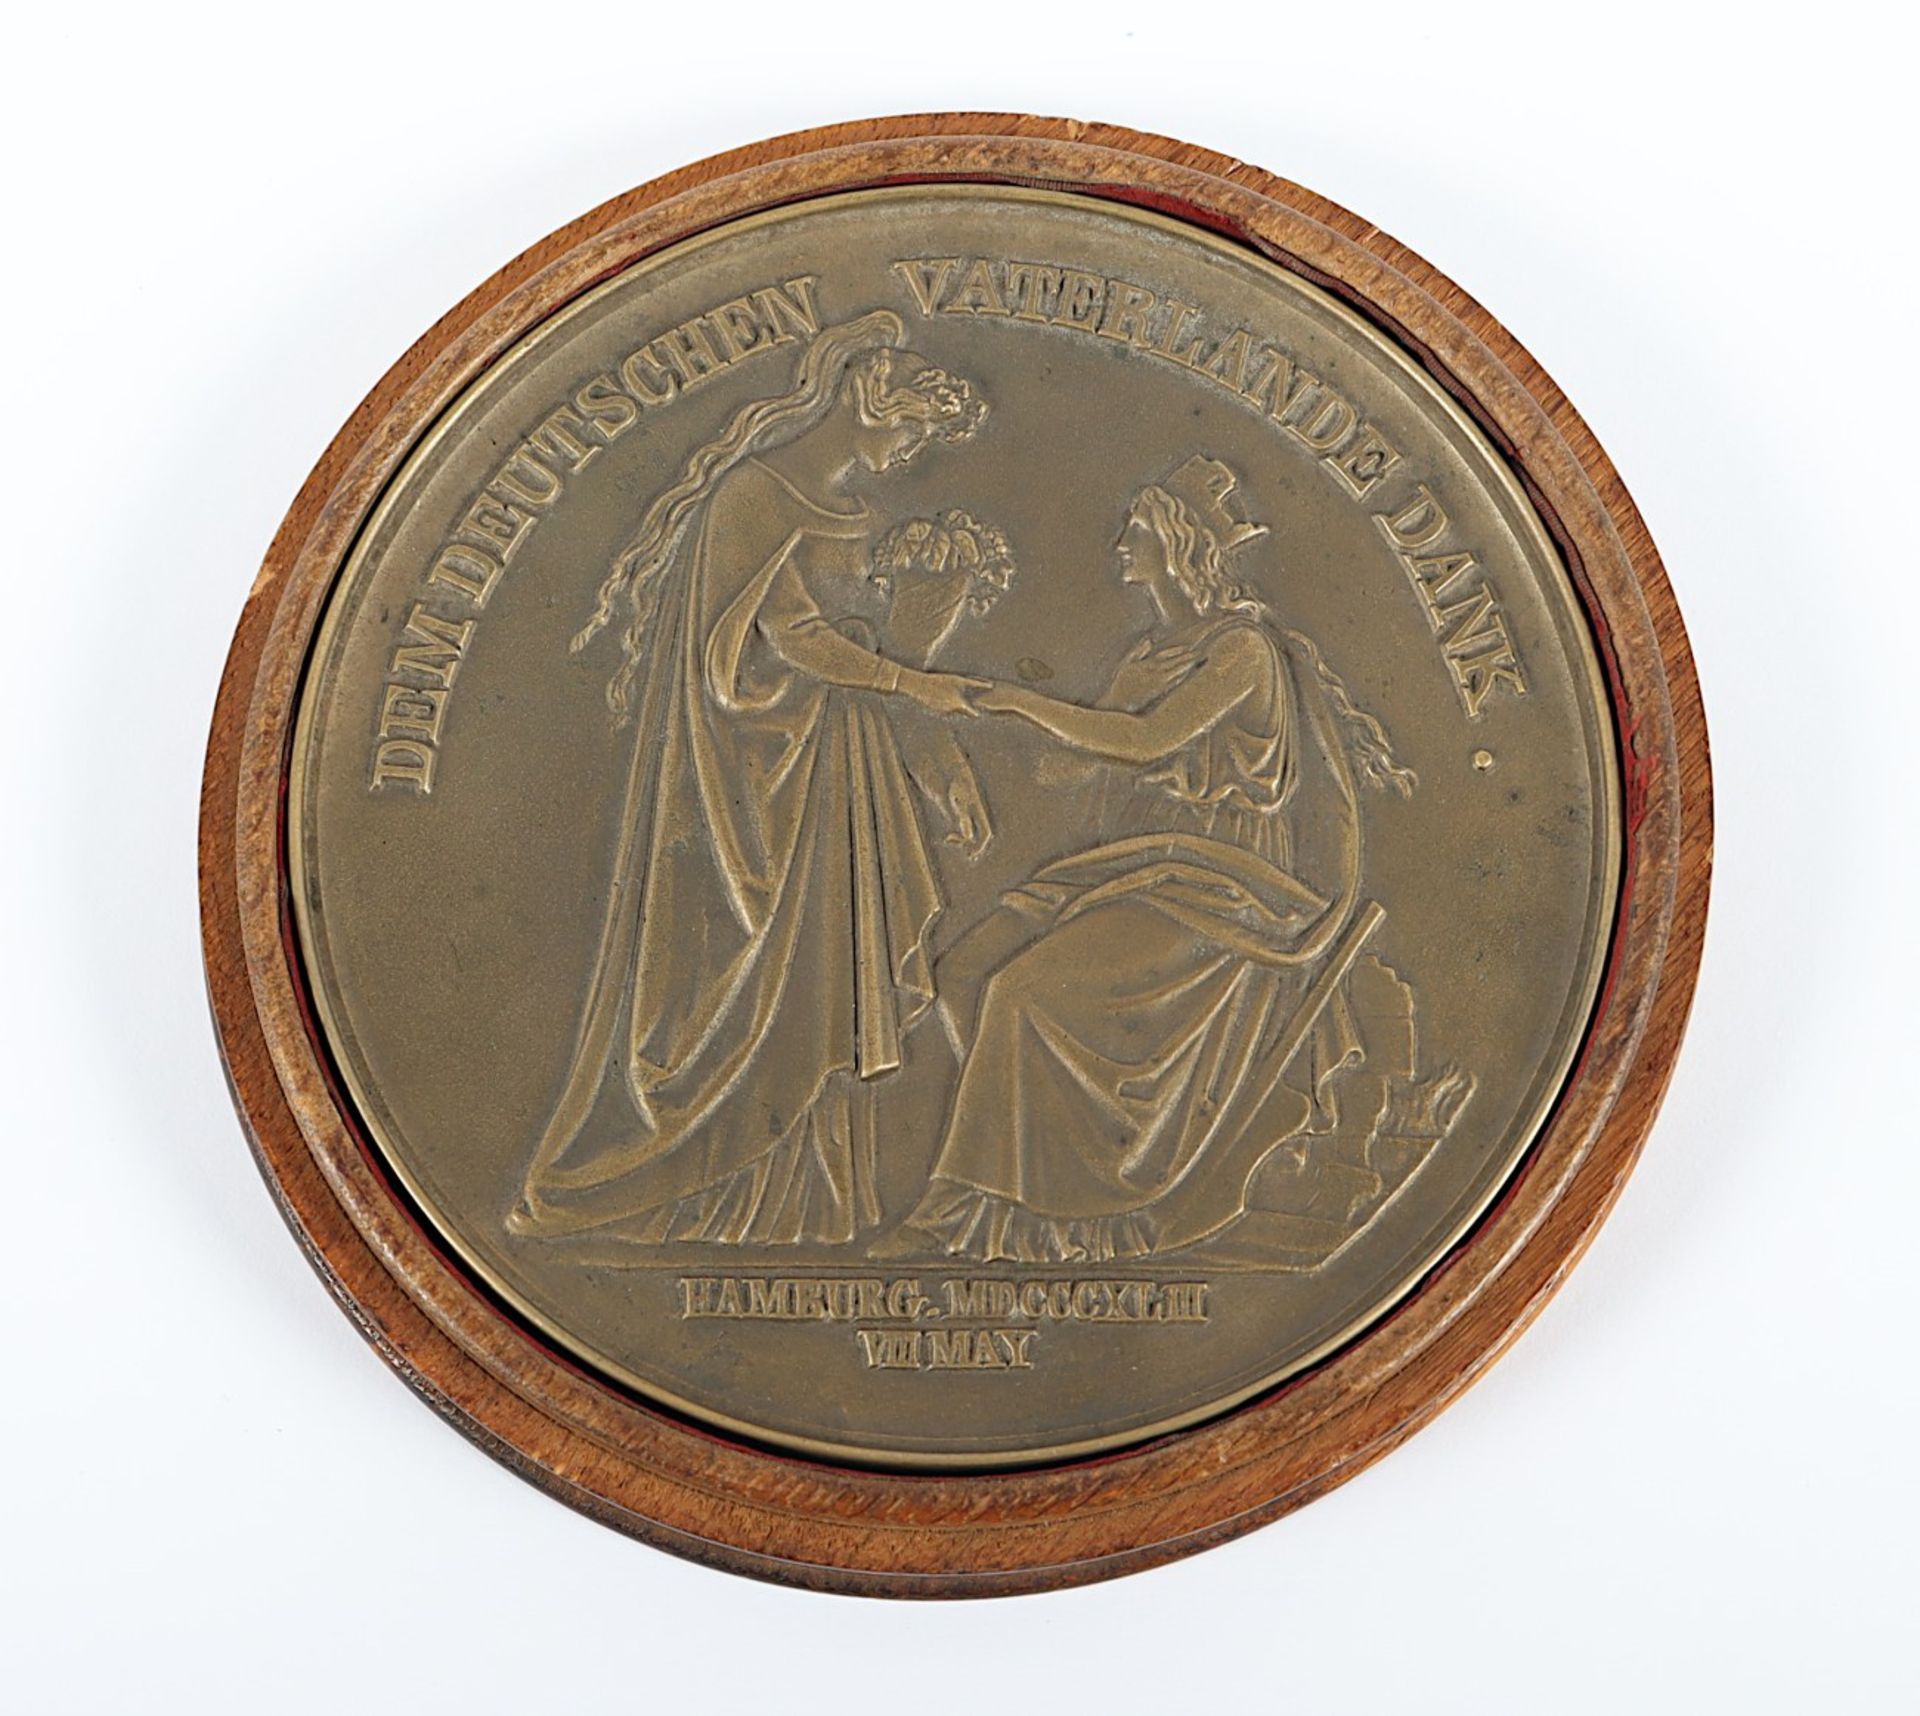 SELTENE MEDAILLE STADTBRAND HAMBURG 1842, große Bronzegussmedaille (Dm 16,5) ausgegeben für die Hil